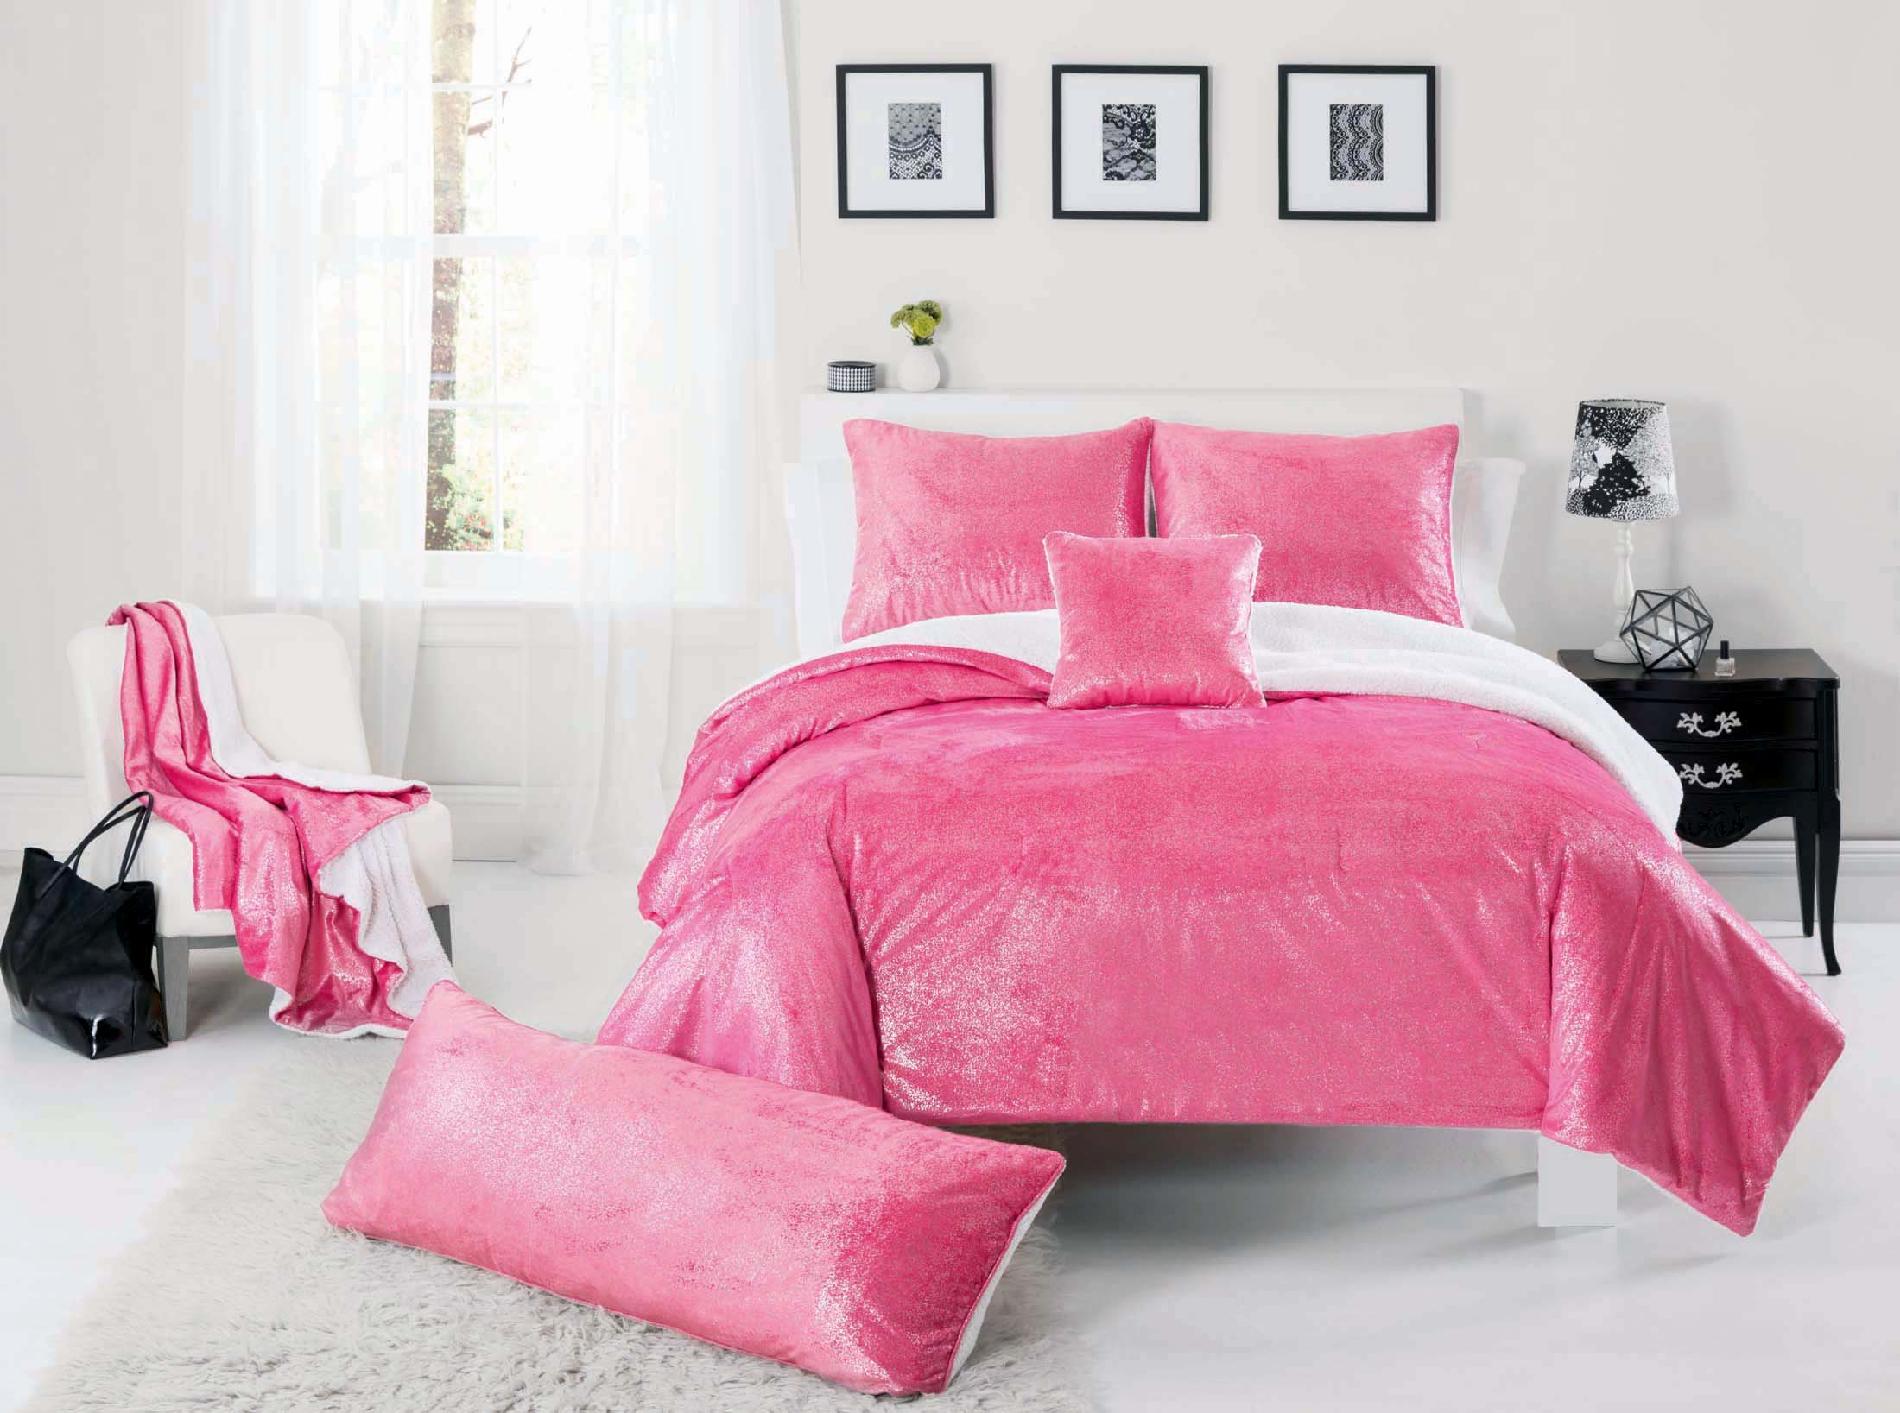 Sparkle Mink Pink Comforter Set with Sham(s)